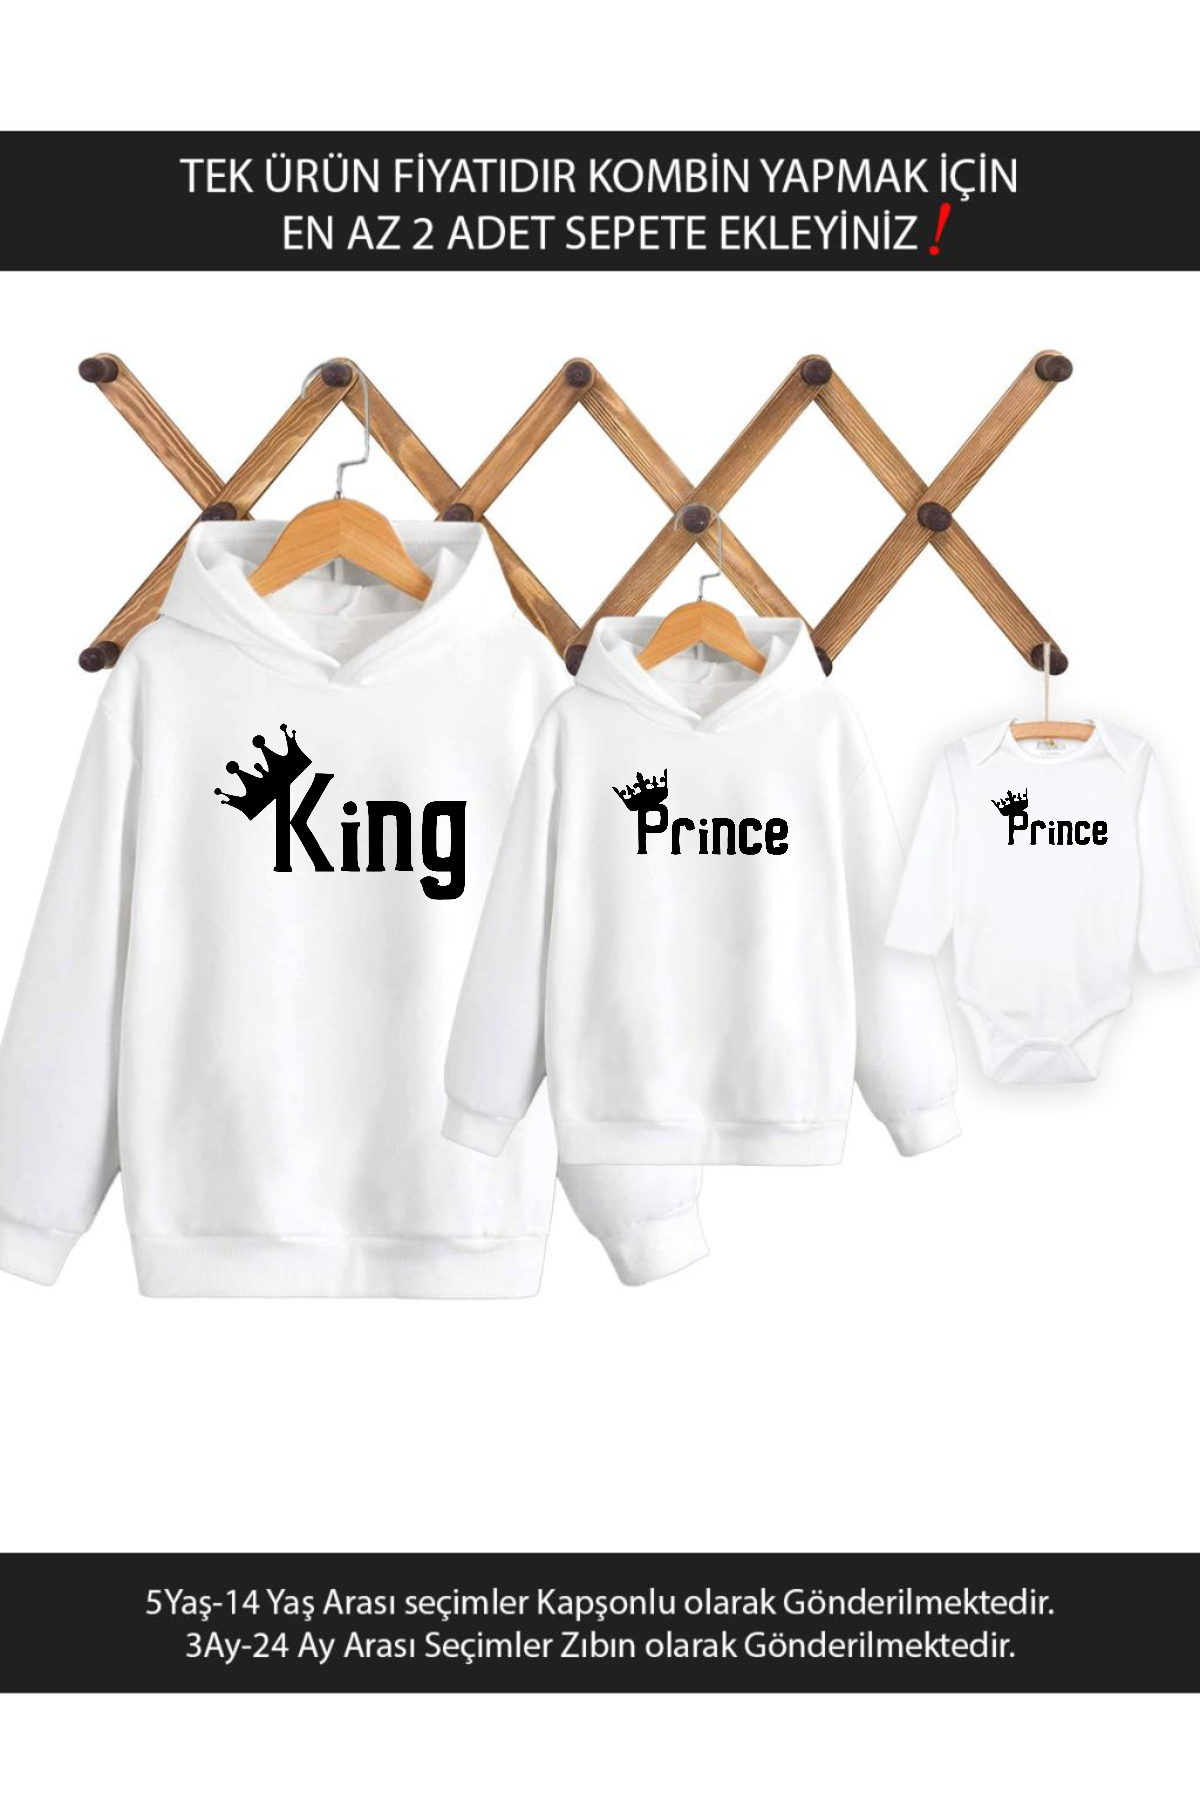 Baba Oğul King Prince(TEK ÜRÜN FİYATIDIR KOMBİN YAPMAK İÇİN EN AZ 2 ADET SEPETE EKLEYİNİZ)